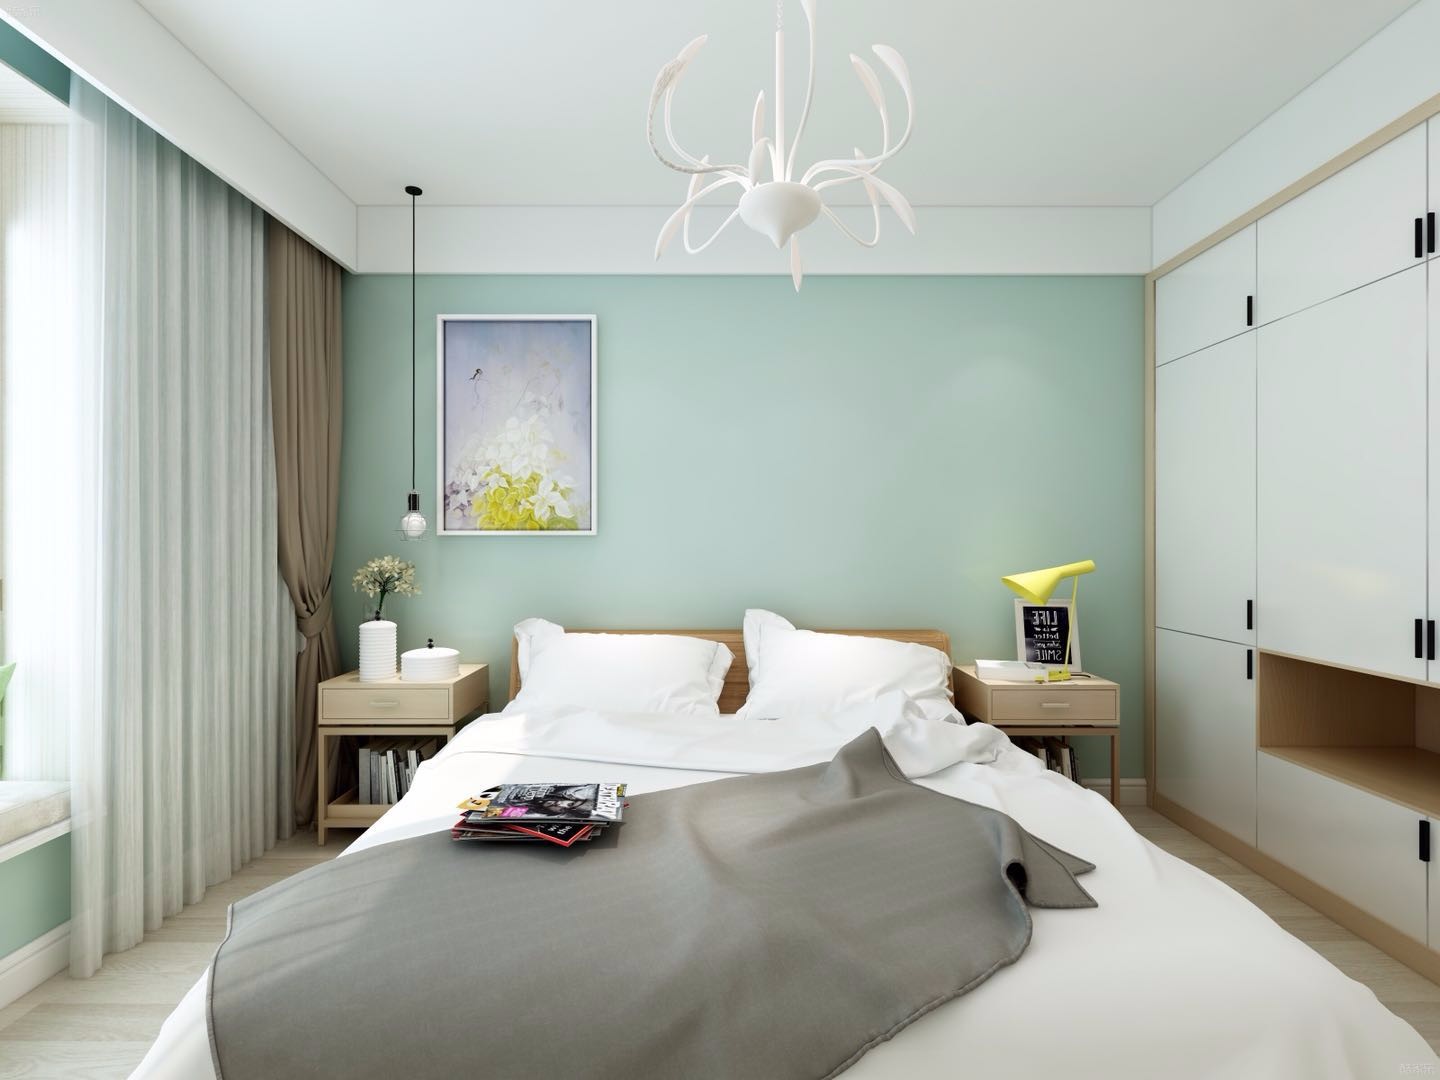 三居室装修,10-15万装修,80平米装修,卧室,简约风格,卧室背景墙,绿色